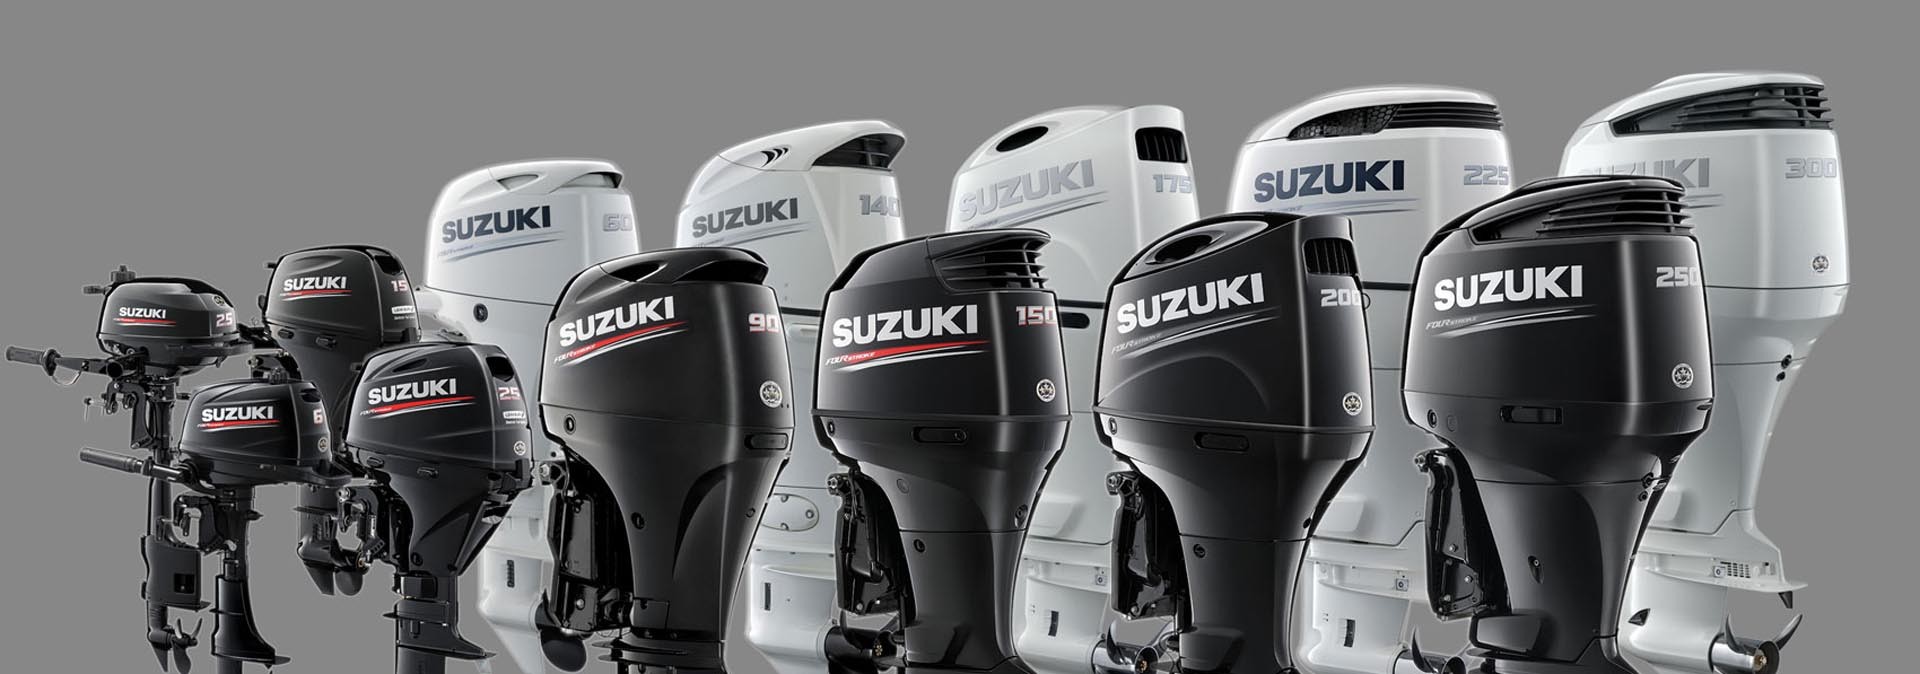 Δείτε τα προϊόντα Suzuki...